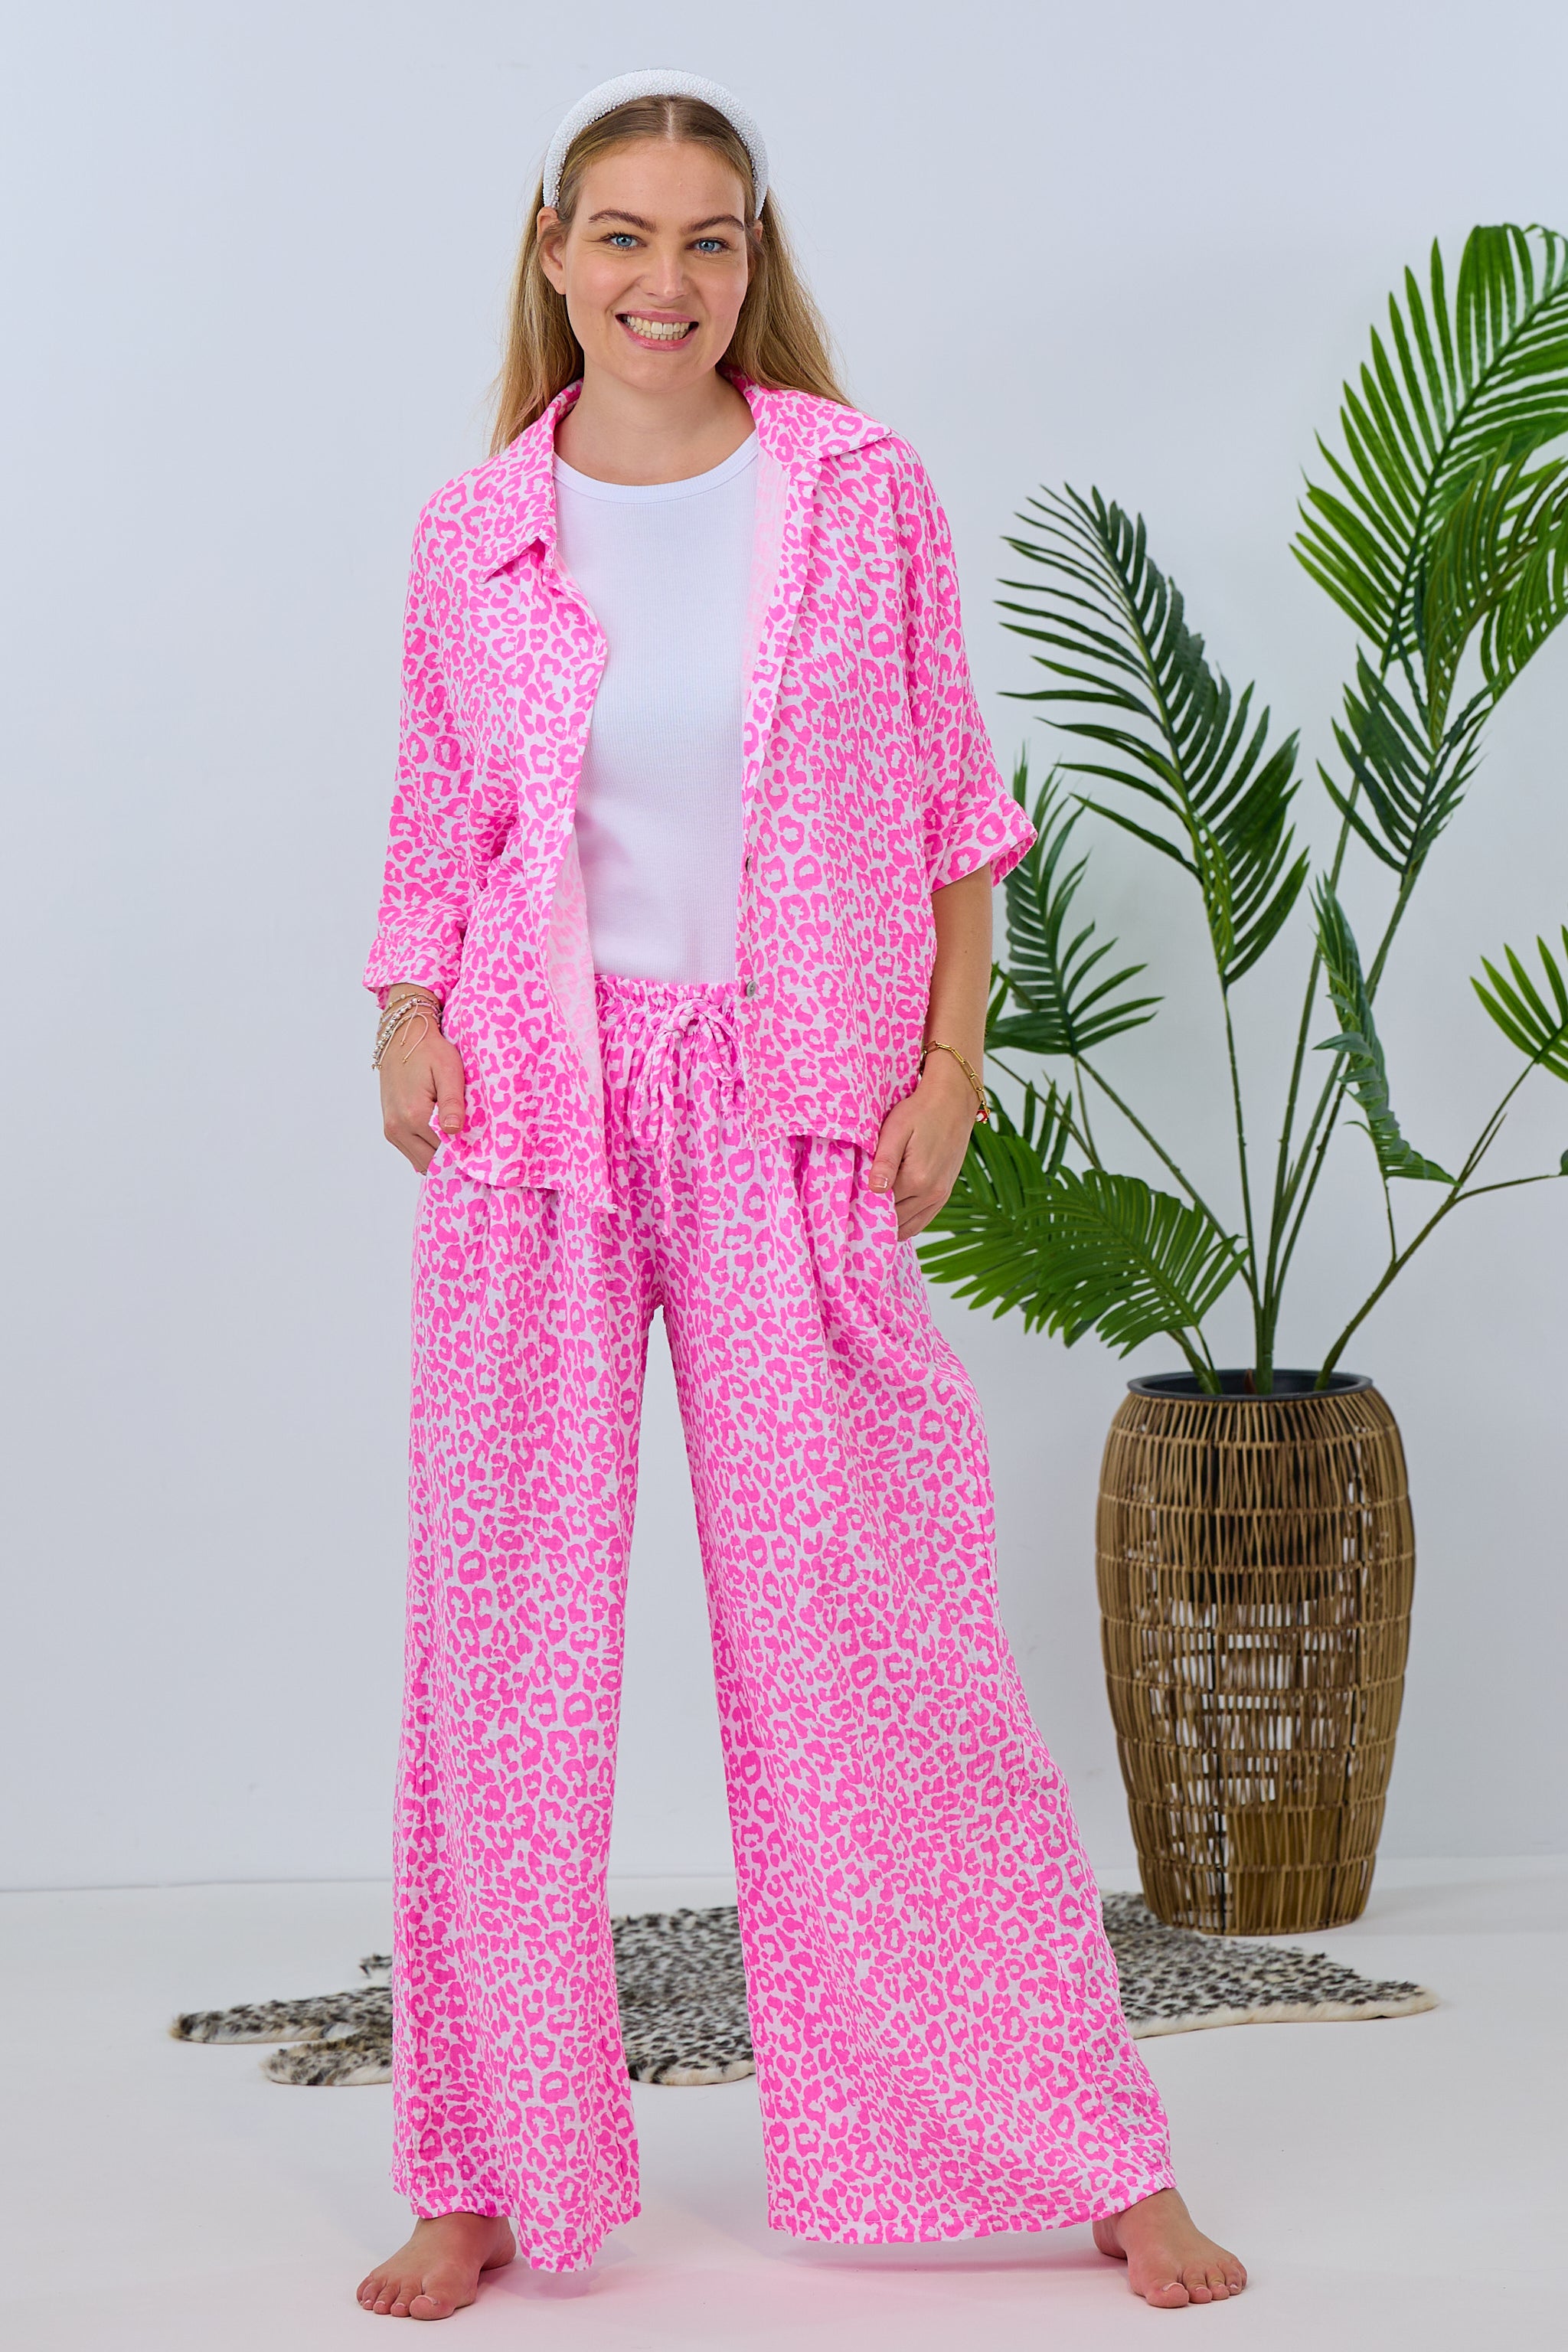 Damen Musselin Hose pink-weiß leo Trends & Lifestyle